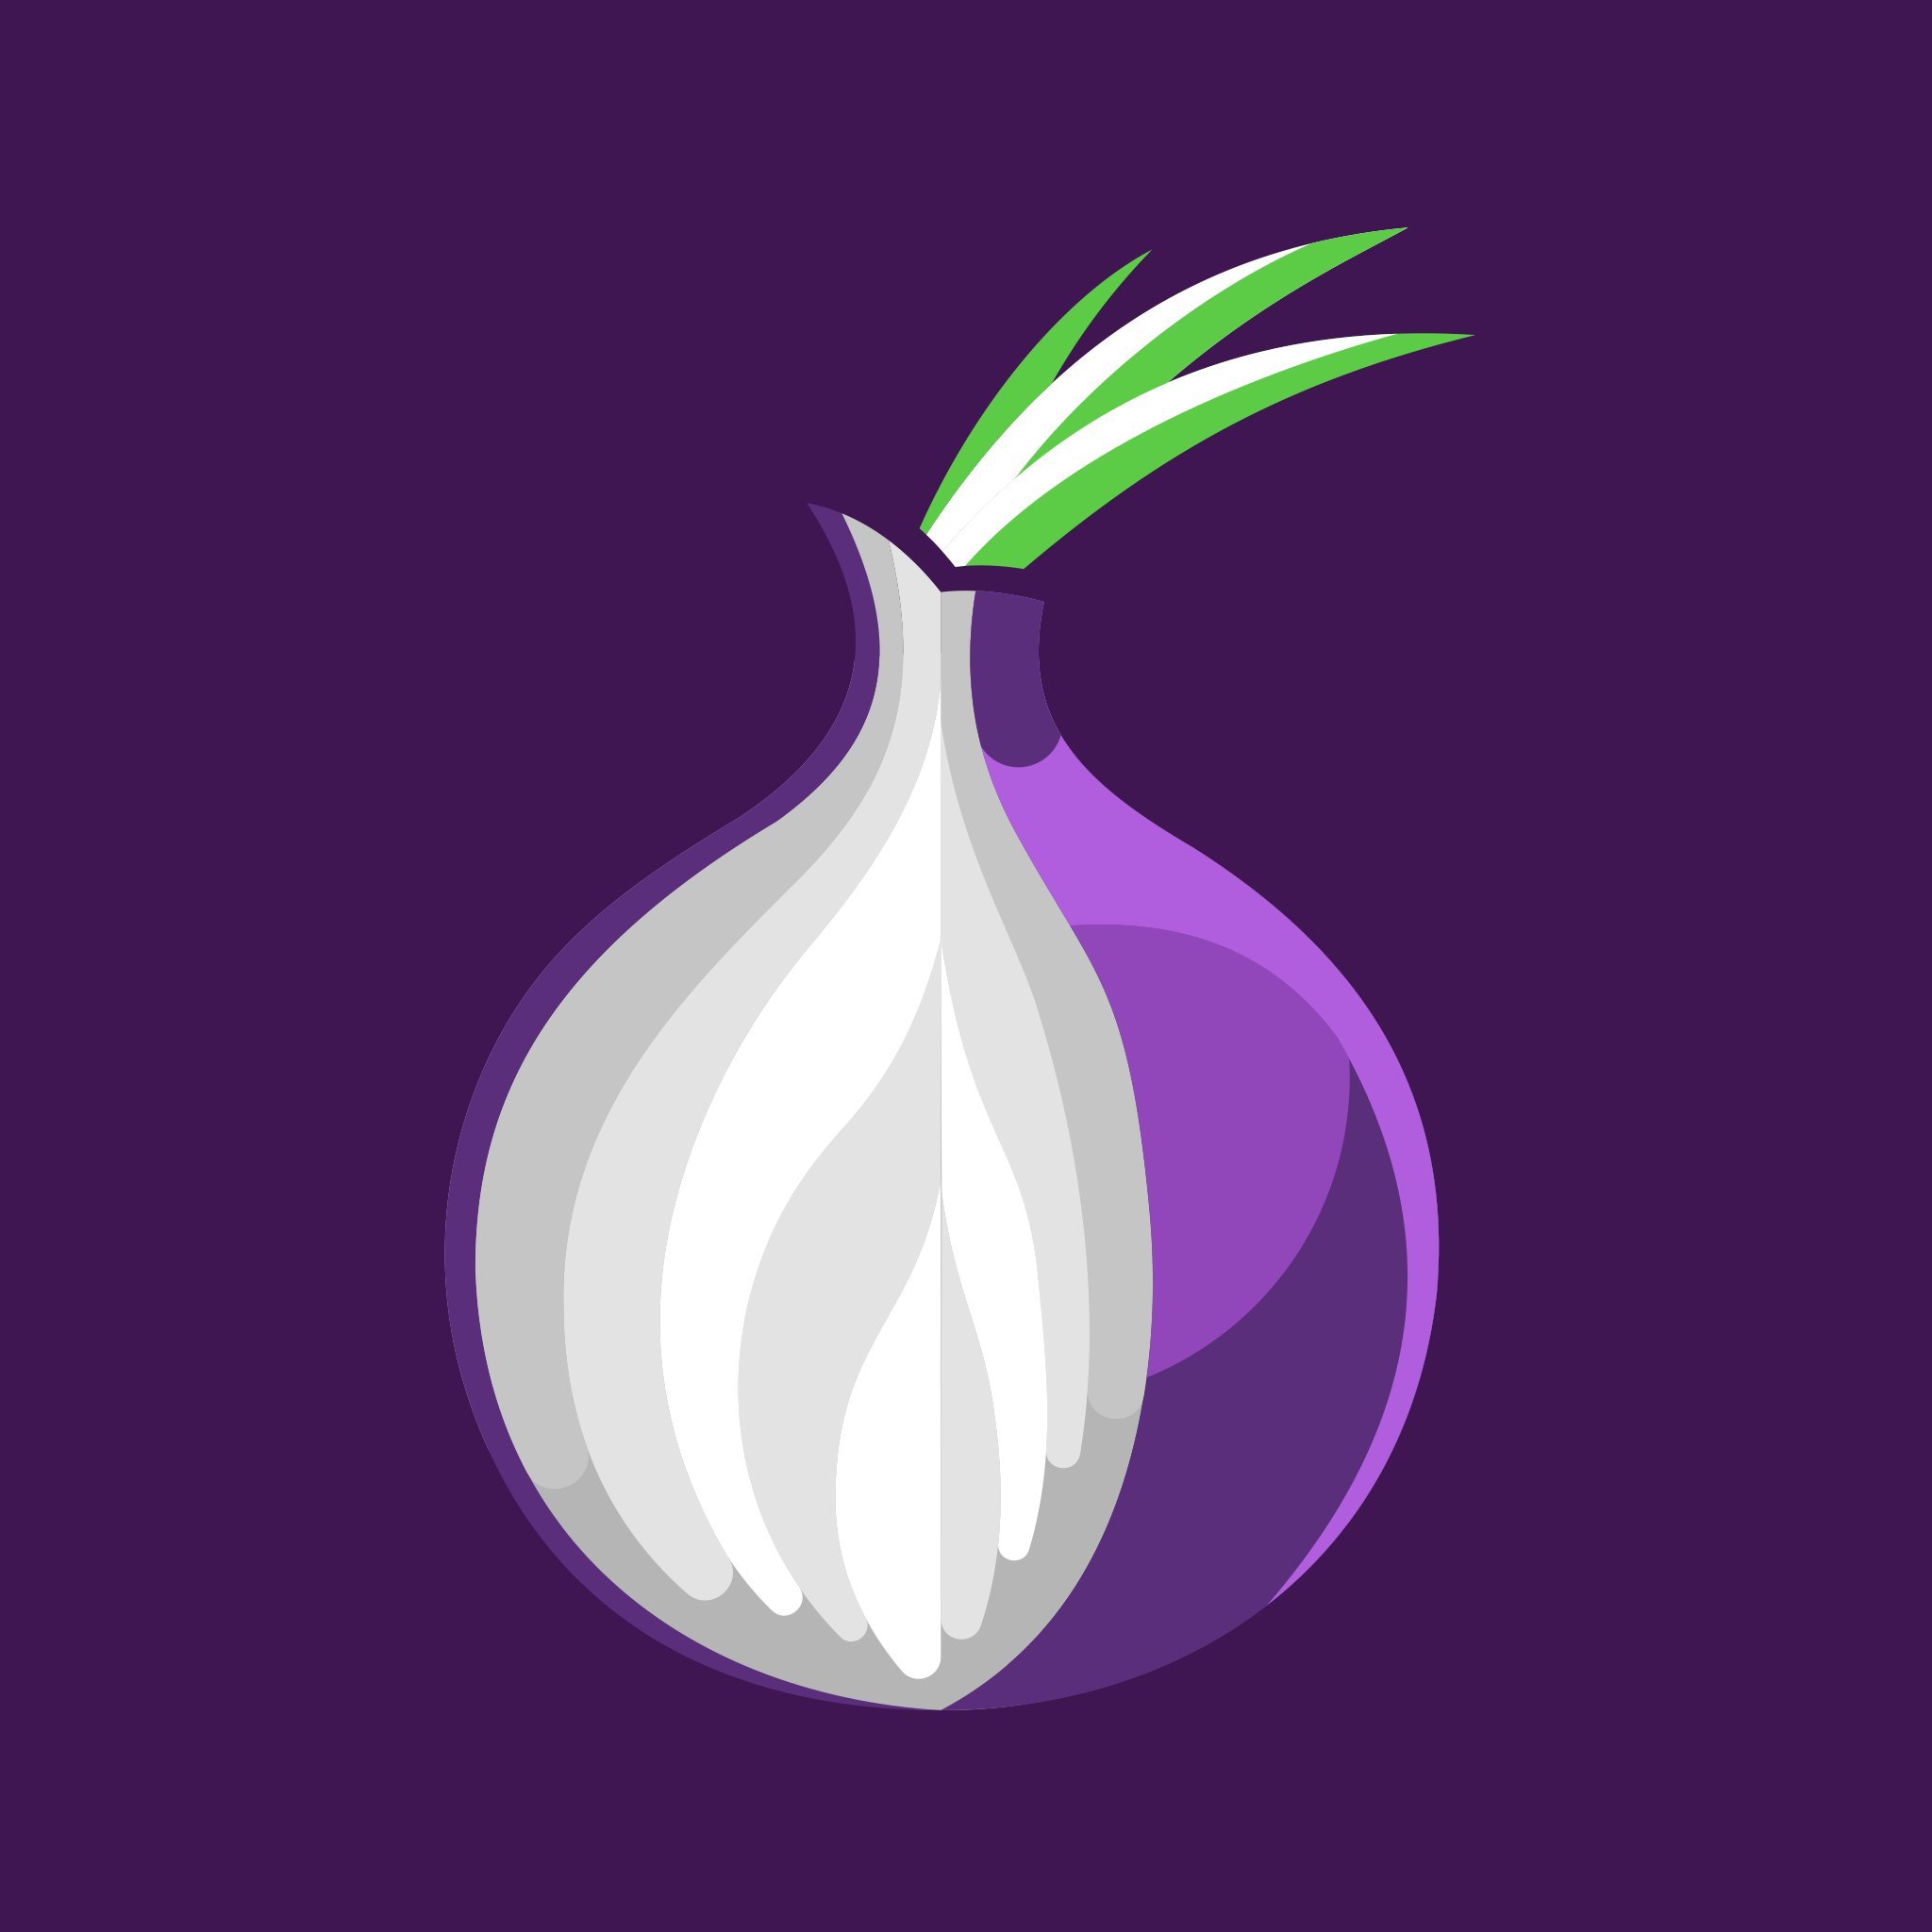 Tor browser pictures mega браузер тор exitnodes mega